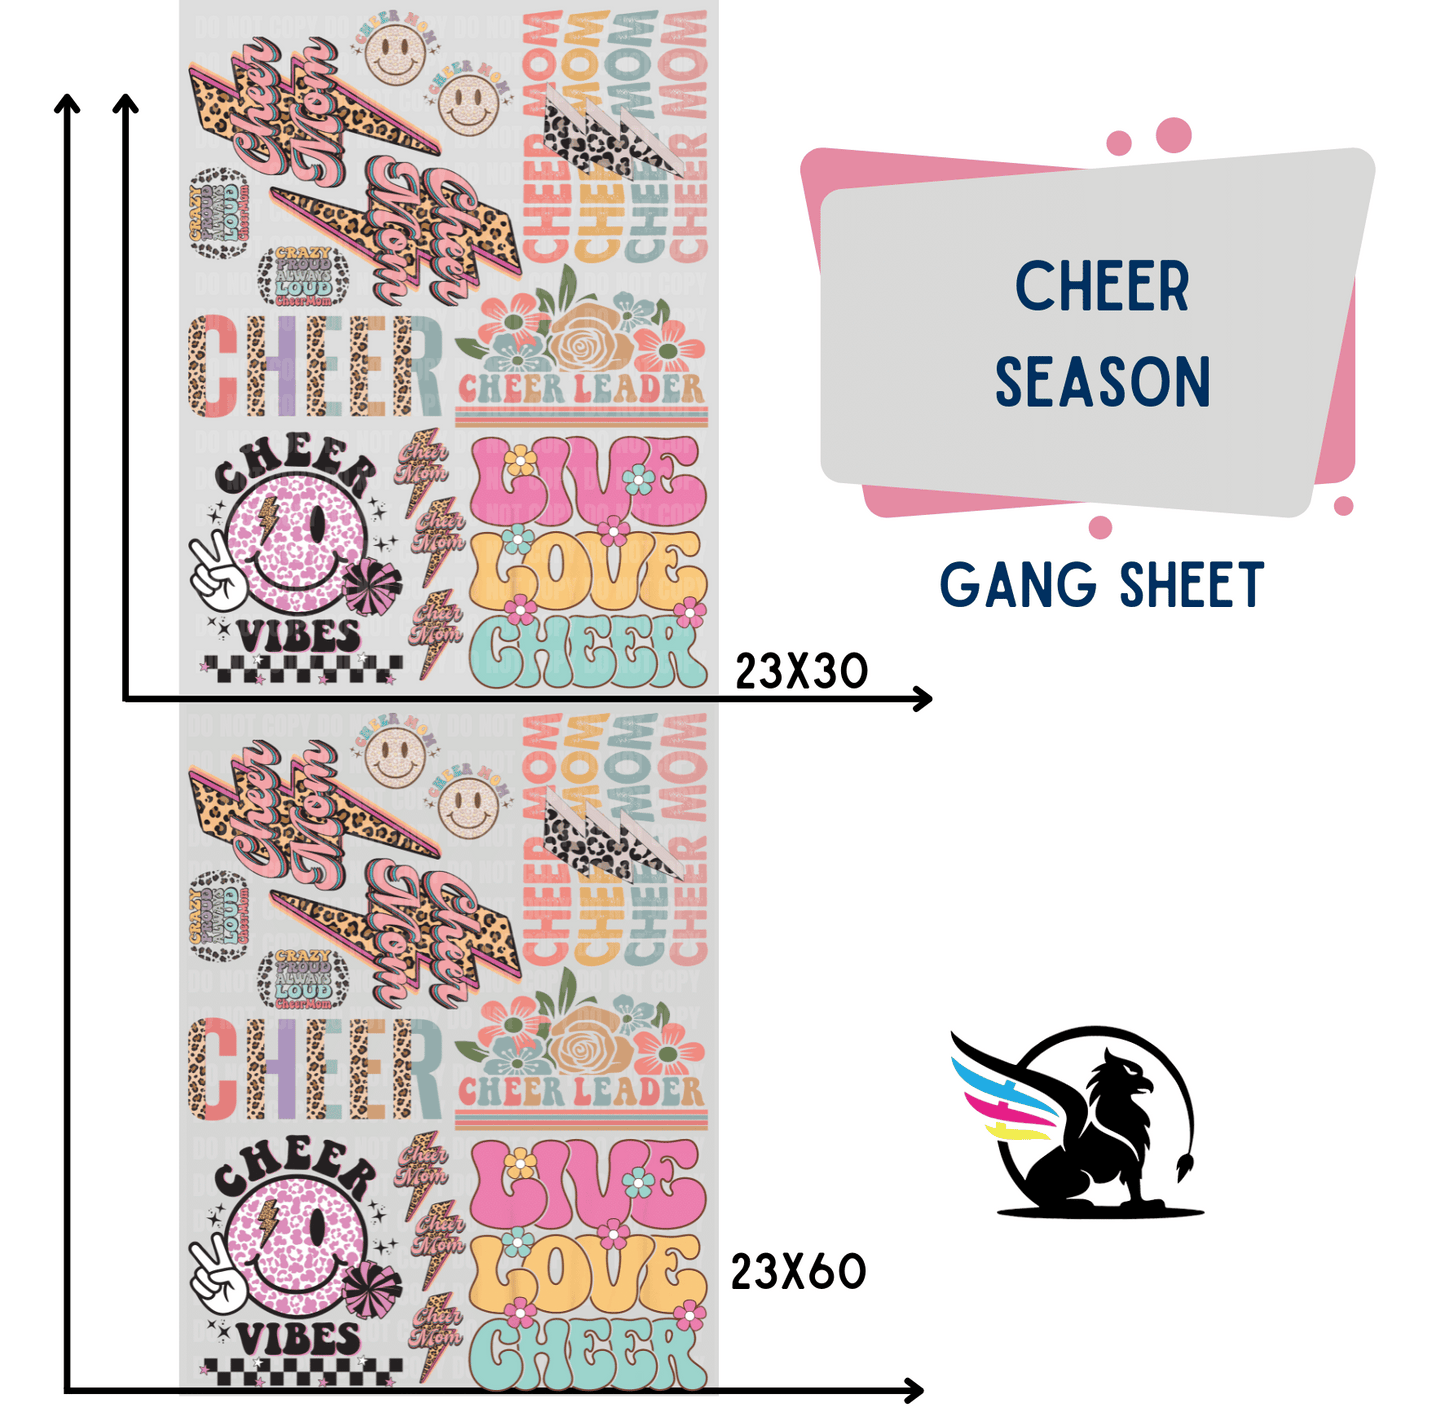 Premade Gang Sheet | Cheer Season